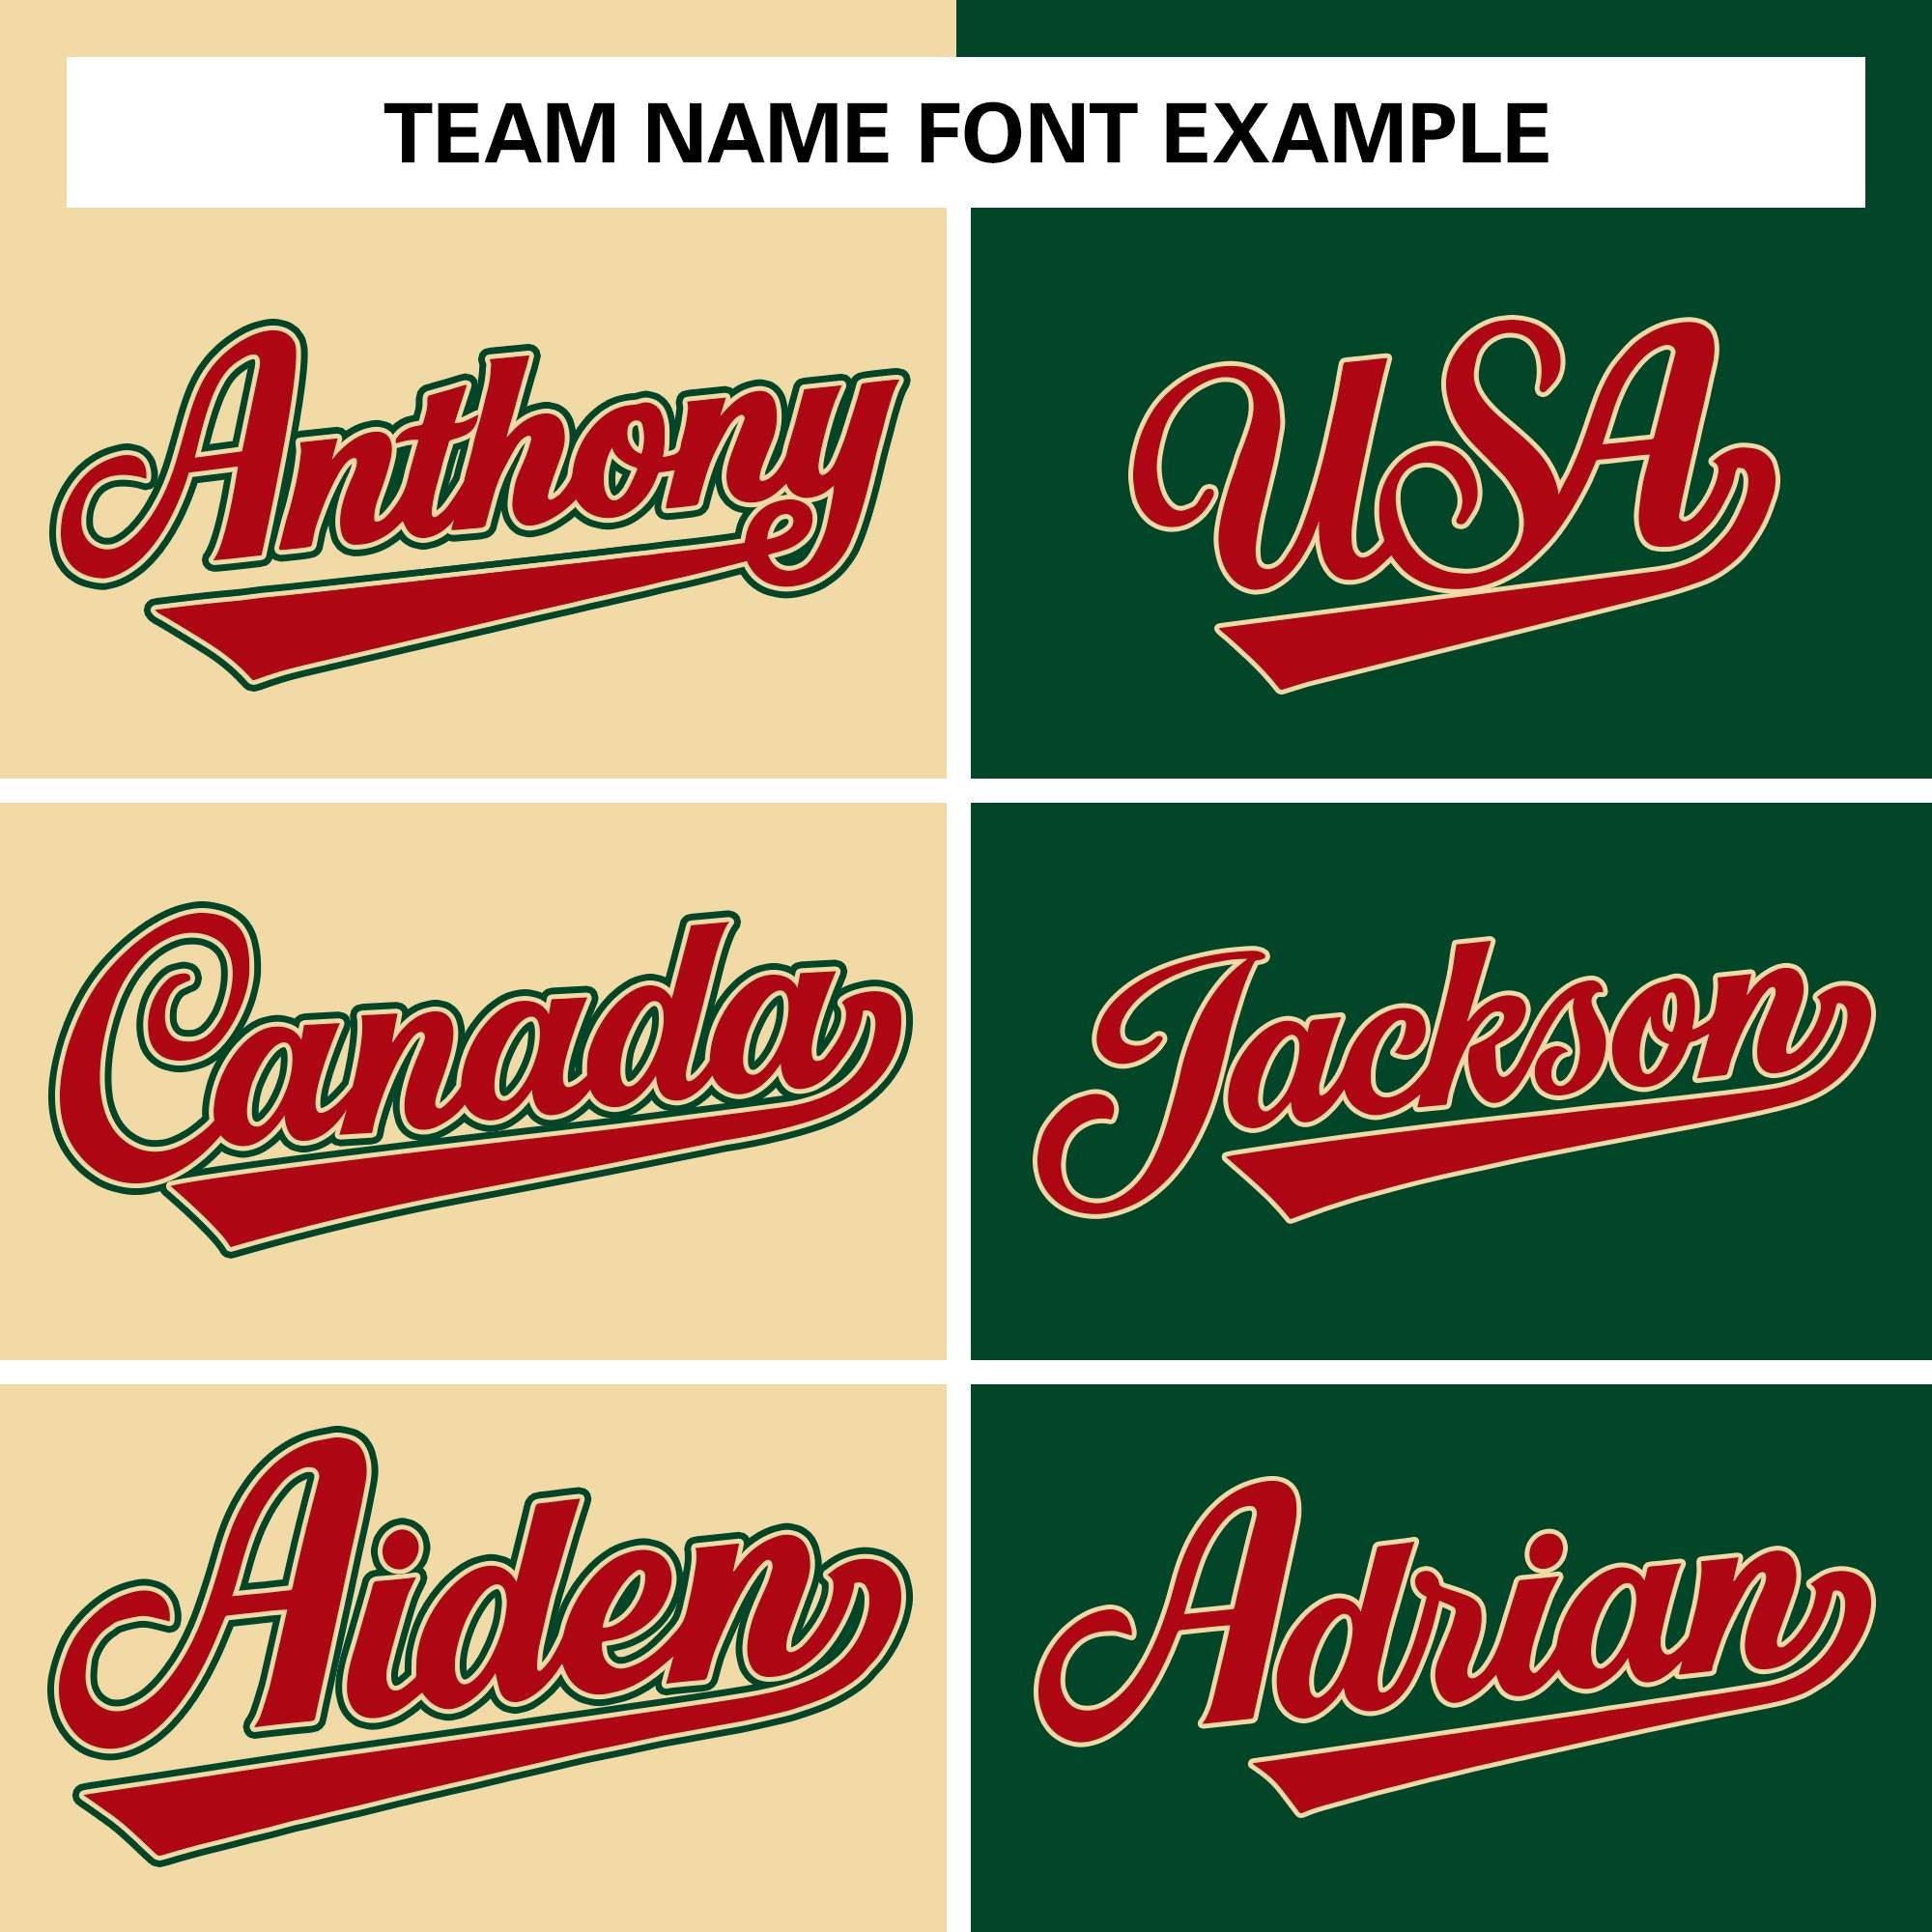 custom letterman jacket men team name font style